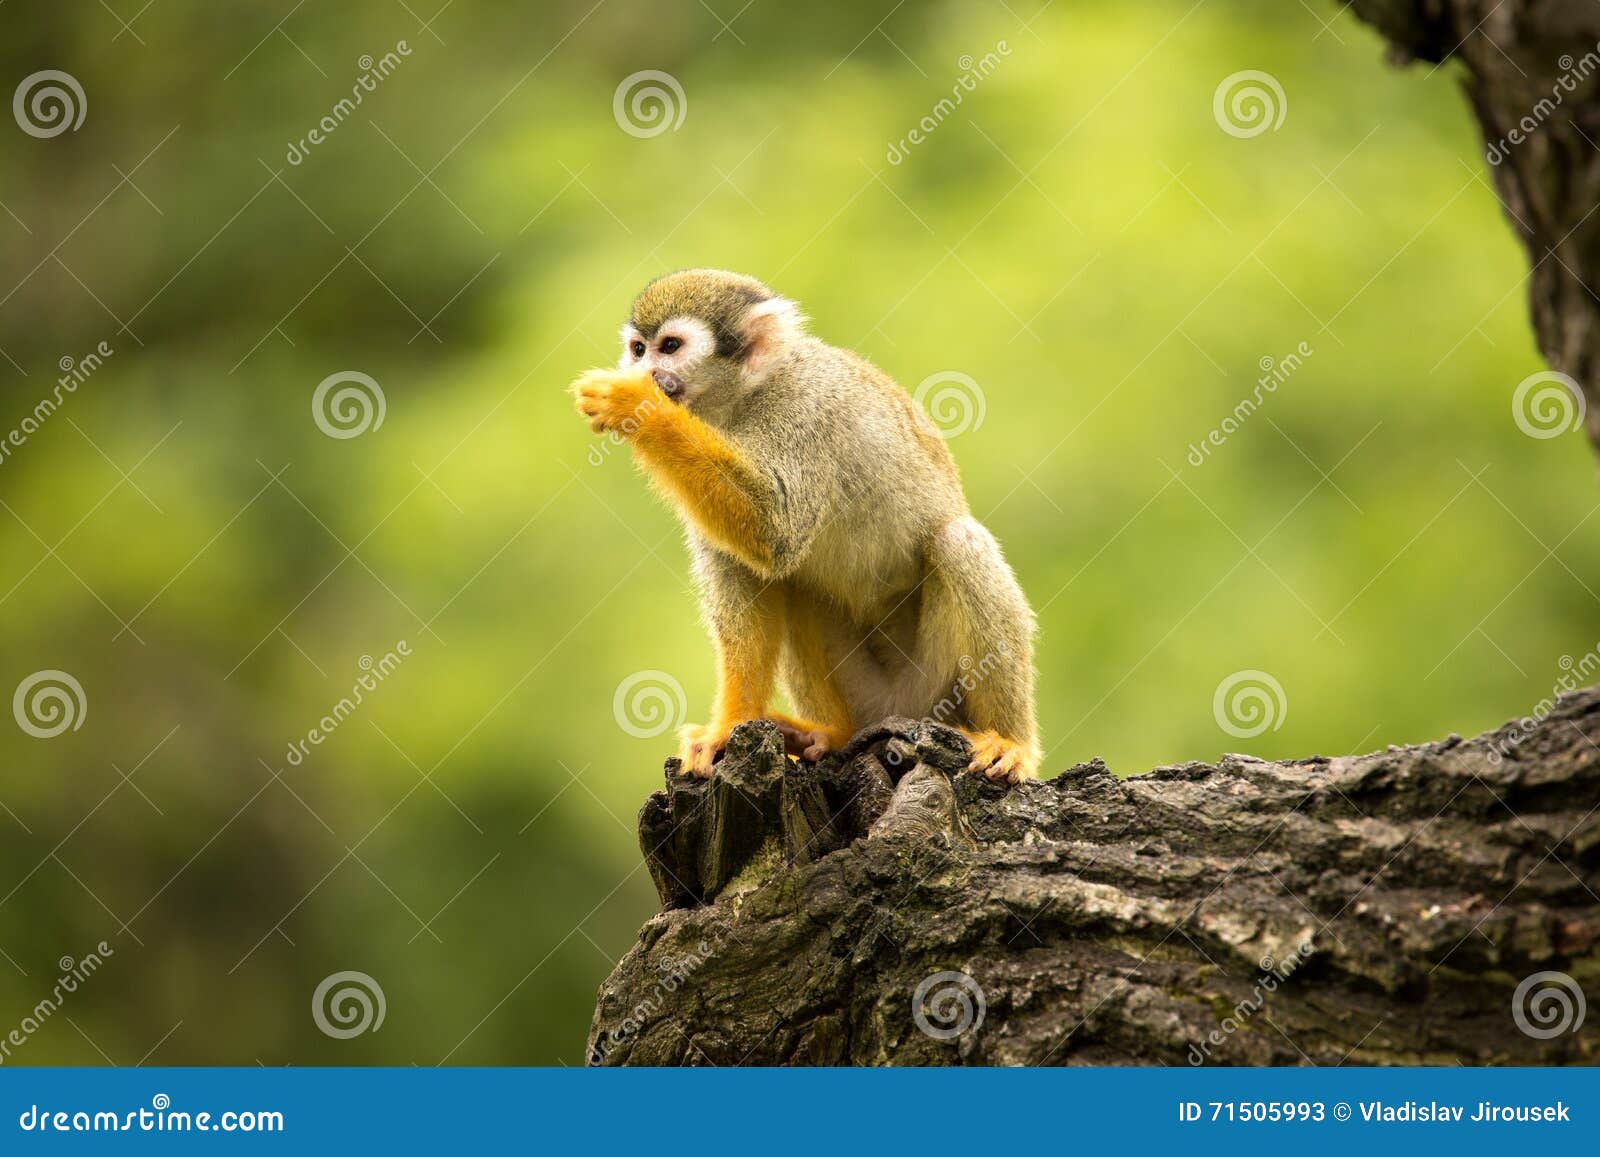 common squirrel monkey, saimiri sciureus is very moving primate